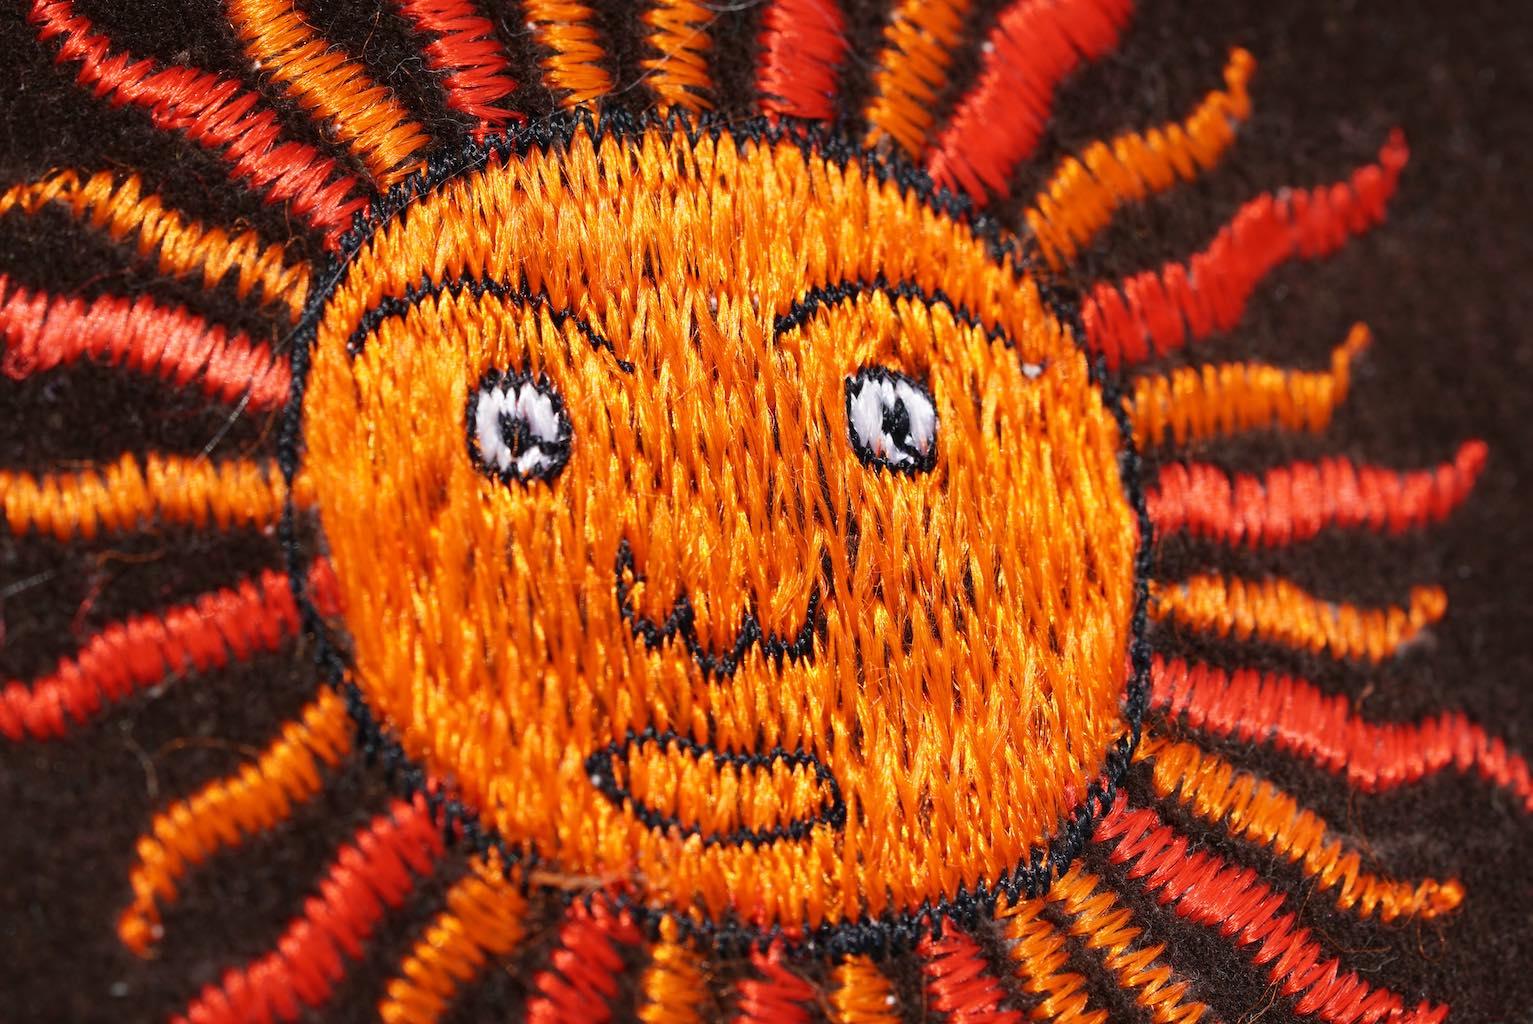 Sun  hand embroidery on cushion